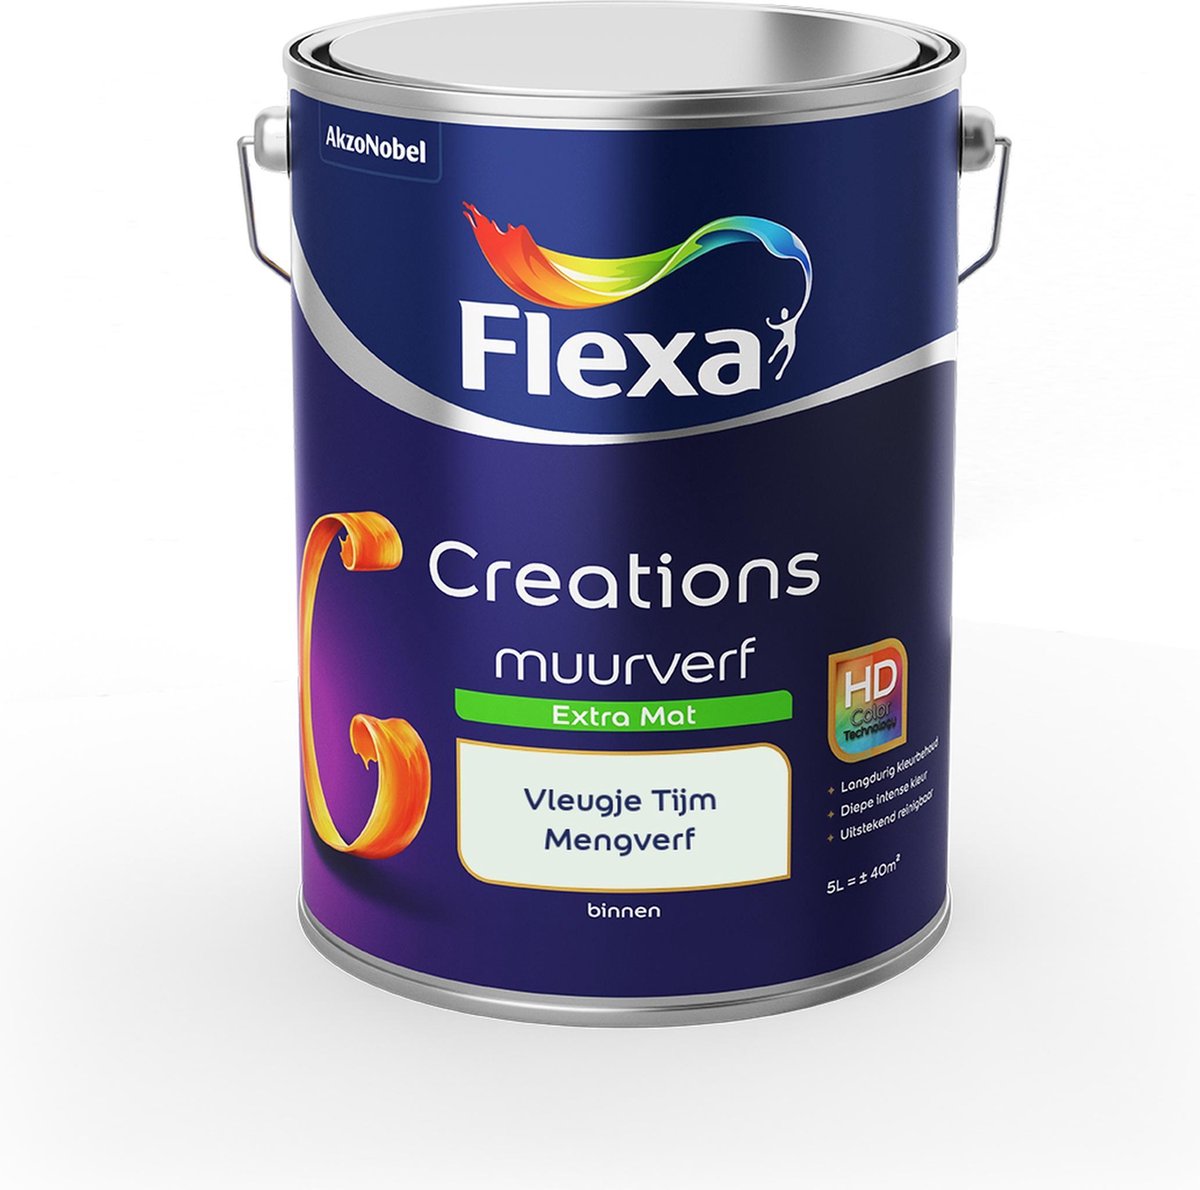 Flexa Creations Muurverf - Extra Mat - Mengkleuren Collectie - Vleugje Tijm - 5 liter